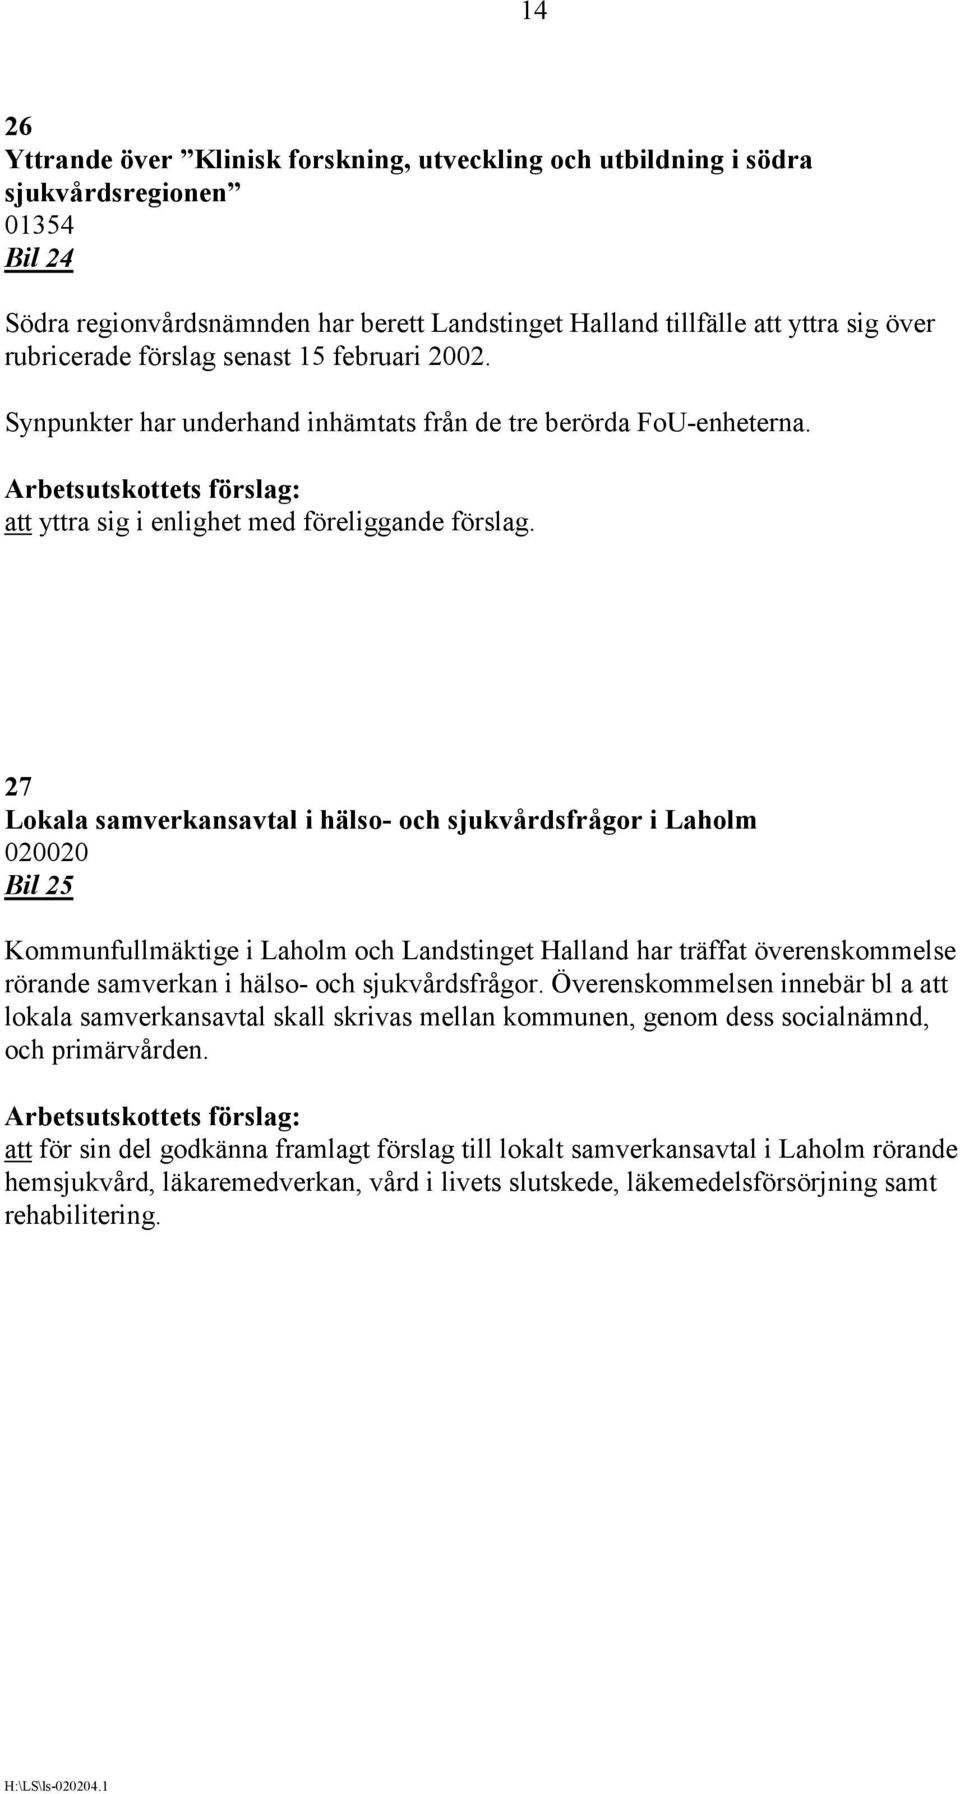 27 Lokala samverkansavtal i hälso- och sjukvårdsfrågor i Laholm 020020 Bil 25 Kommunfullmäktige i Laholm och Landstinget Halland har träffat överenskommelse rörande samverkan i hälso- och